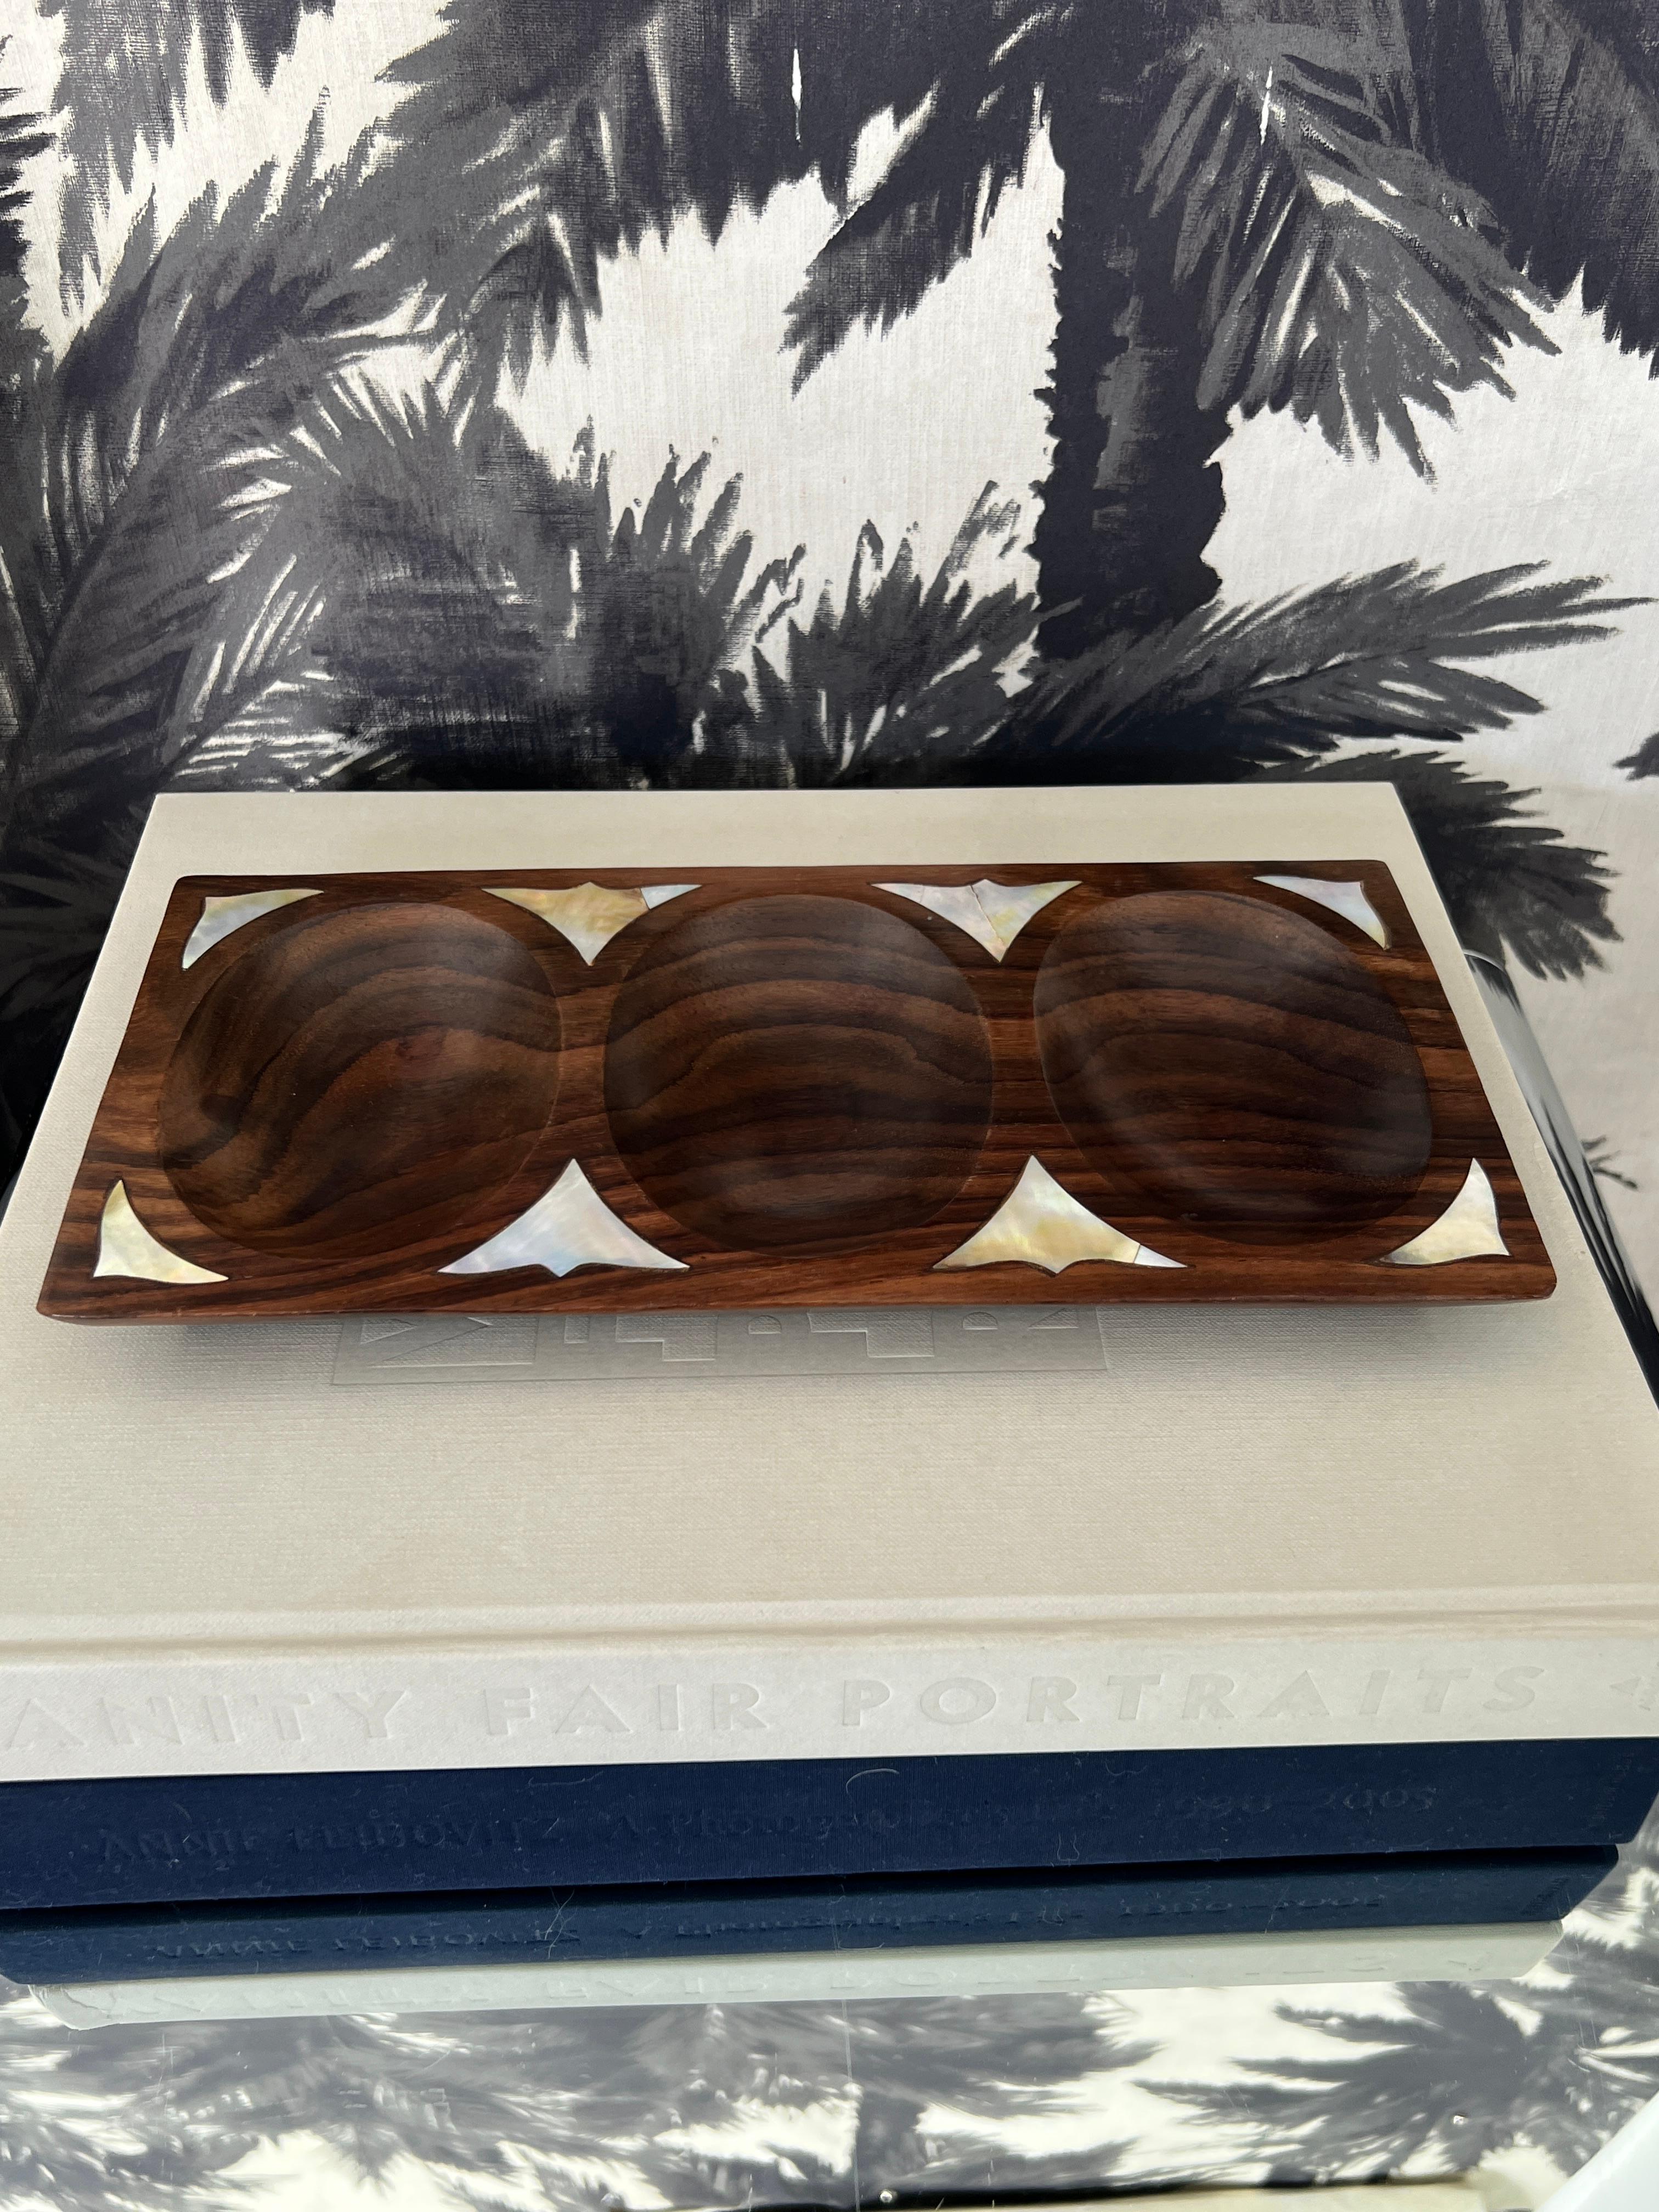 Skandinavisch-modernes geteiltes Serviertablett oder Auffangschale. Das aus einem einzigen Stück Palisanderholz handgefertigte Tablett weist geometrische Intarsien aus exotischen Perlmuttmuscheln auf. Mit drei handgeschnitzten Fächern, die die